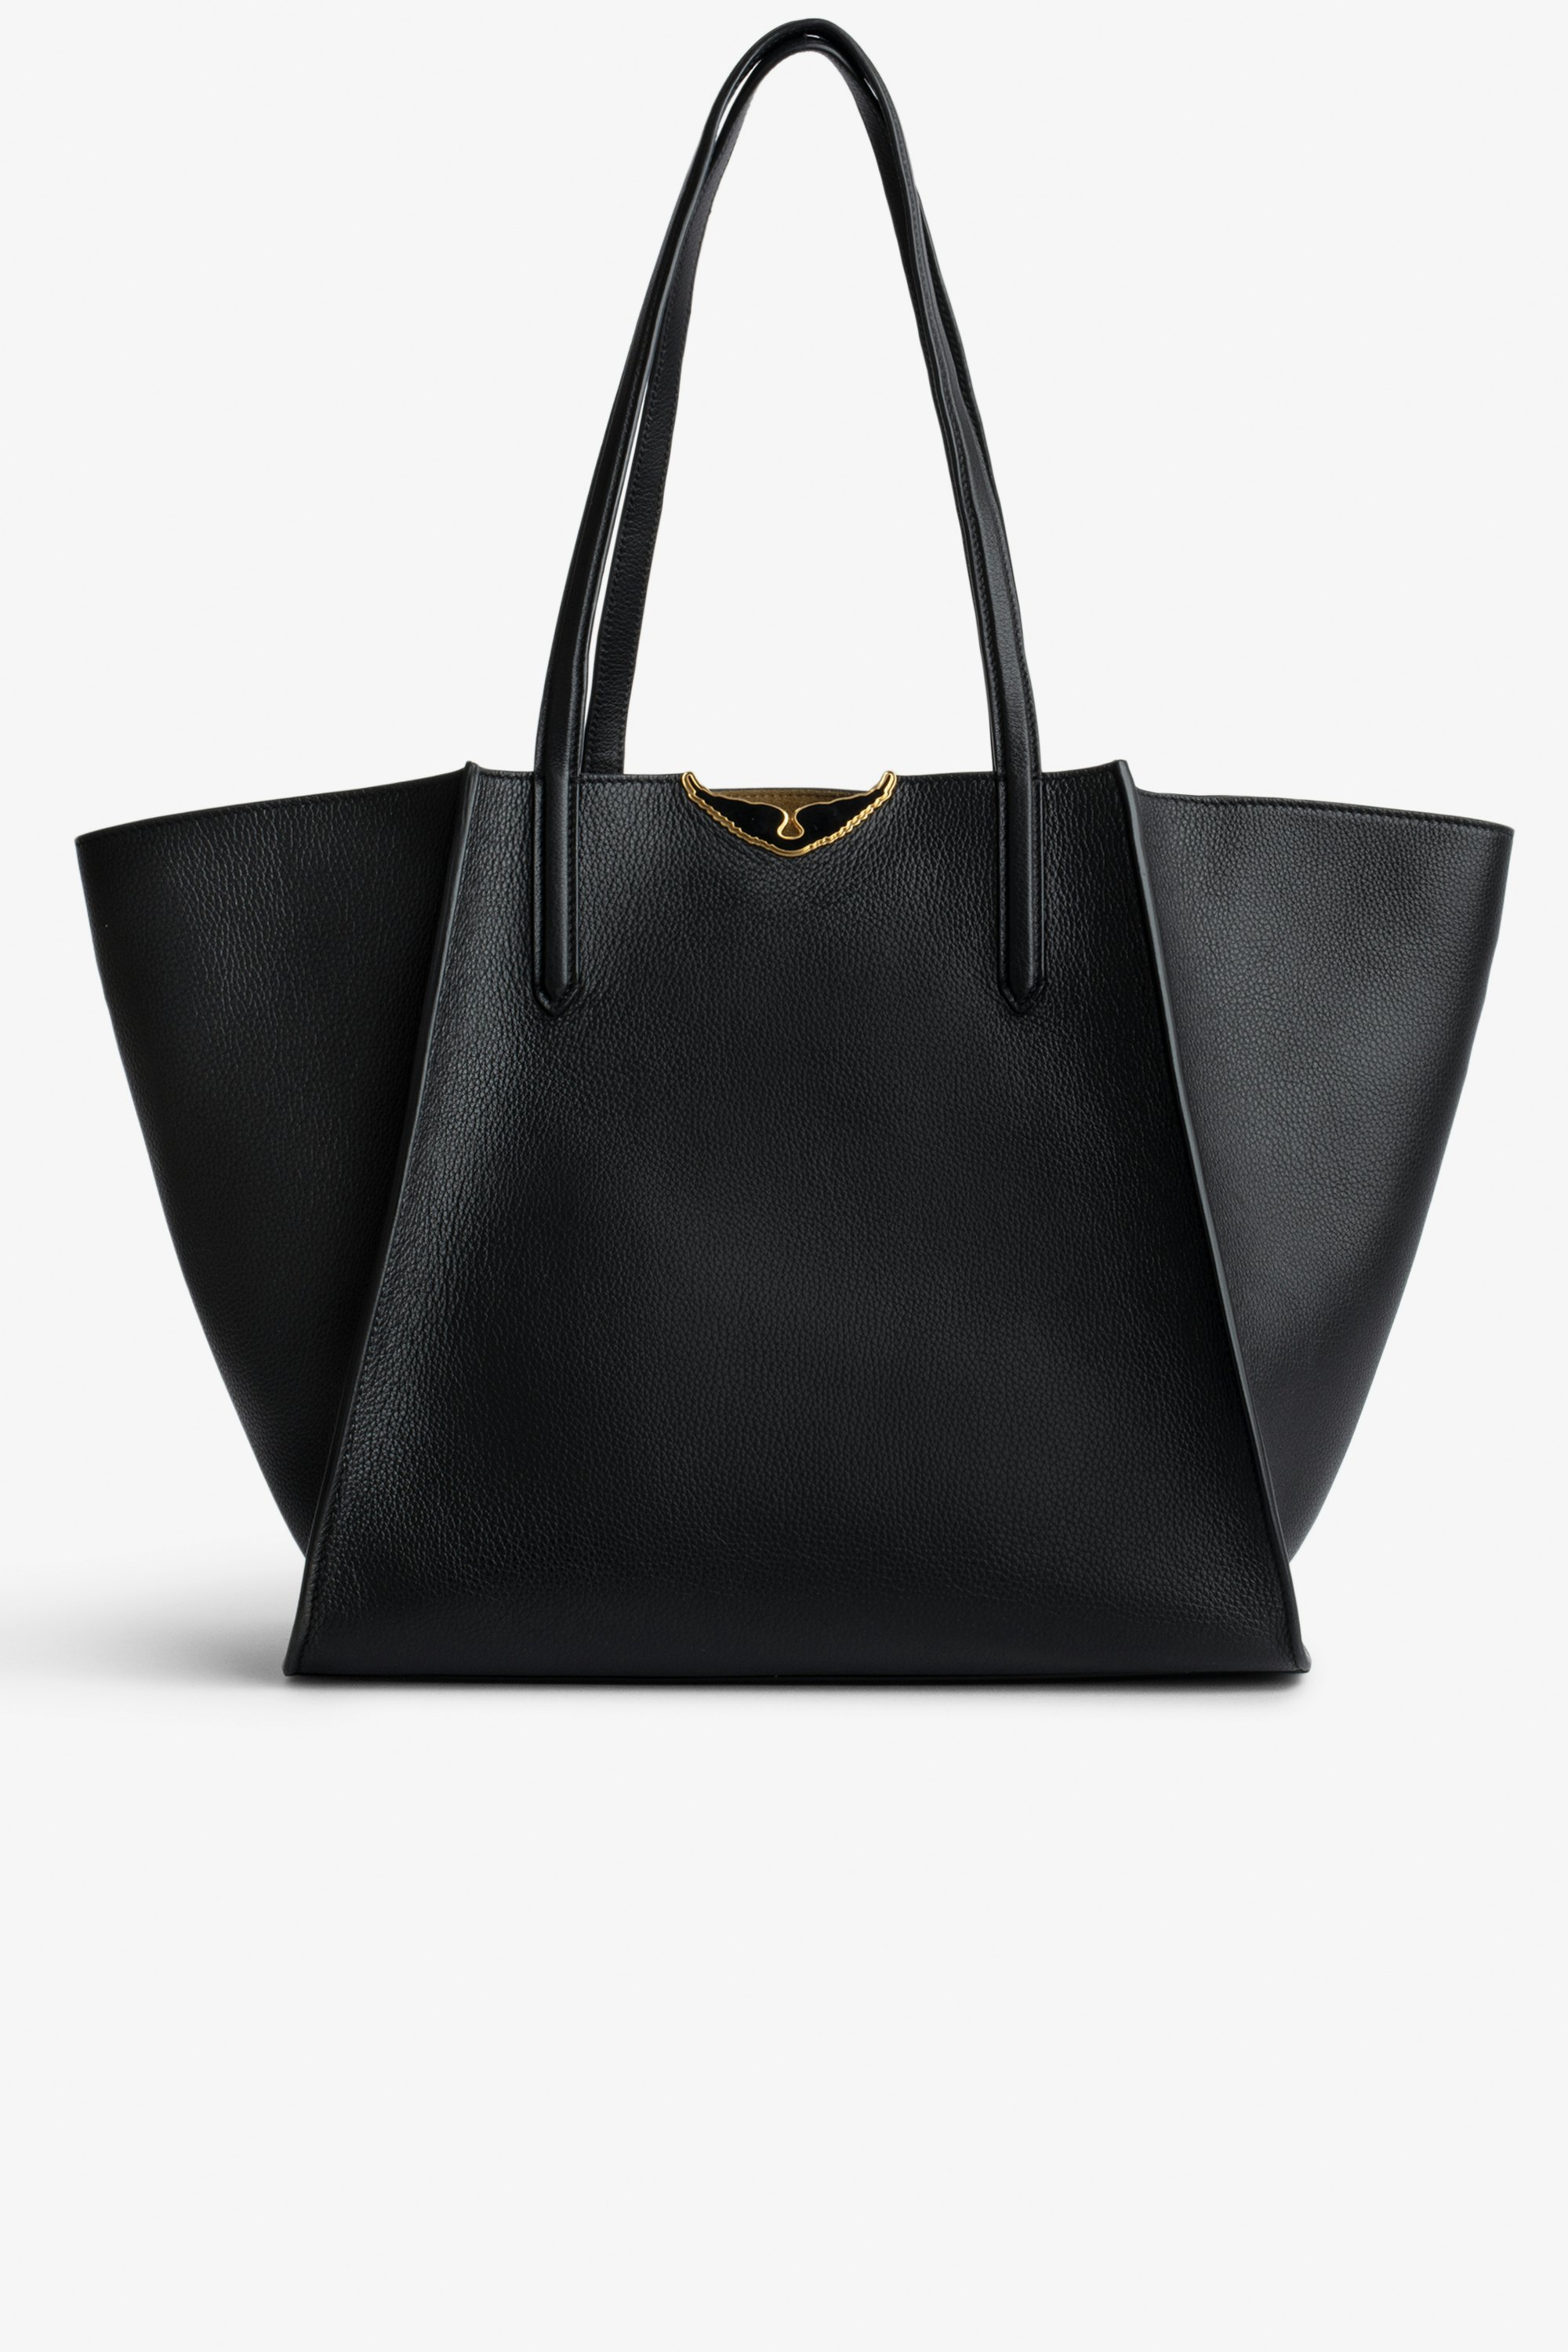 Tasche Le Borderline Damen-Shopper zum Wenden aus schwarzem, genarbtem Leder und khakifarbenem Veloursleder mit schwarz lackierten Flügeln.